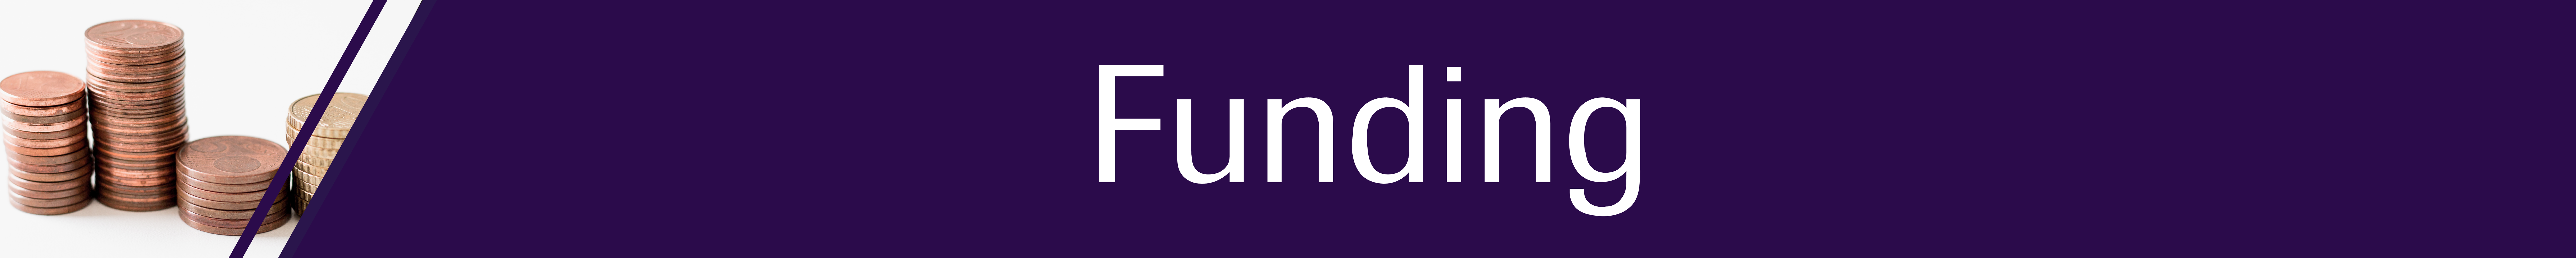 Funding banner-01